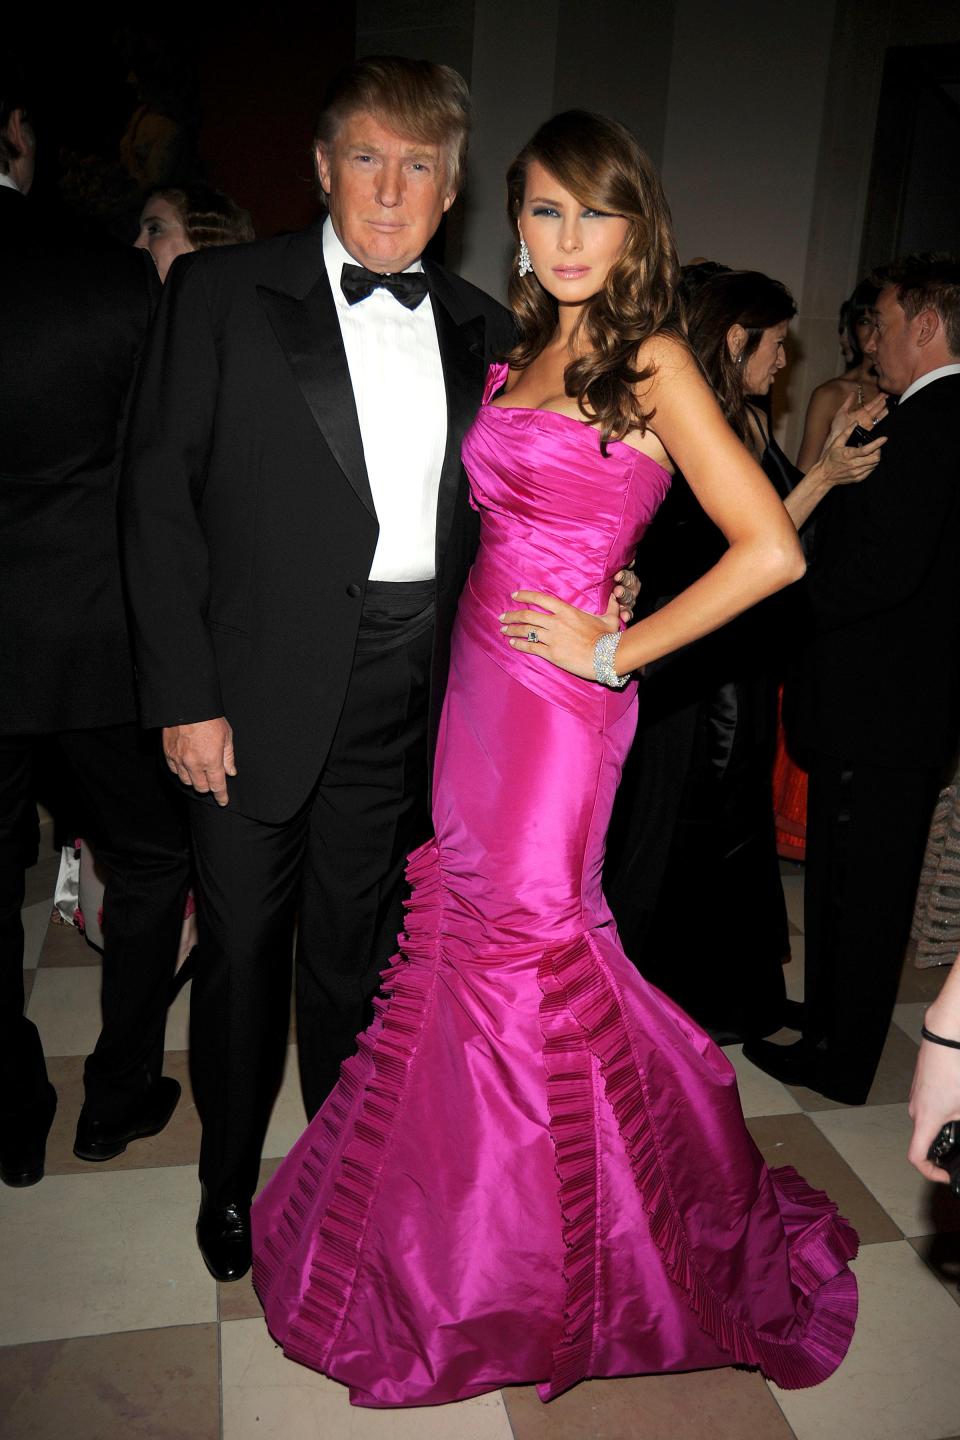 Donald Trump and Melania Trump at the Met Gala in 2008.